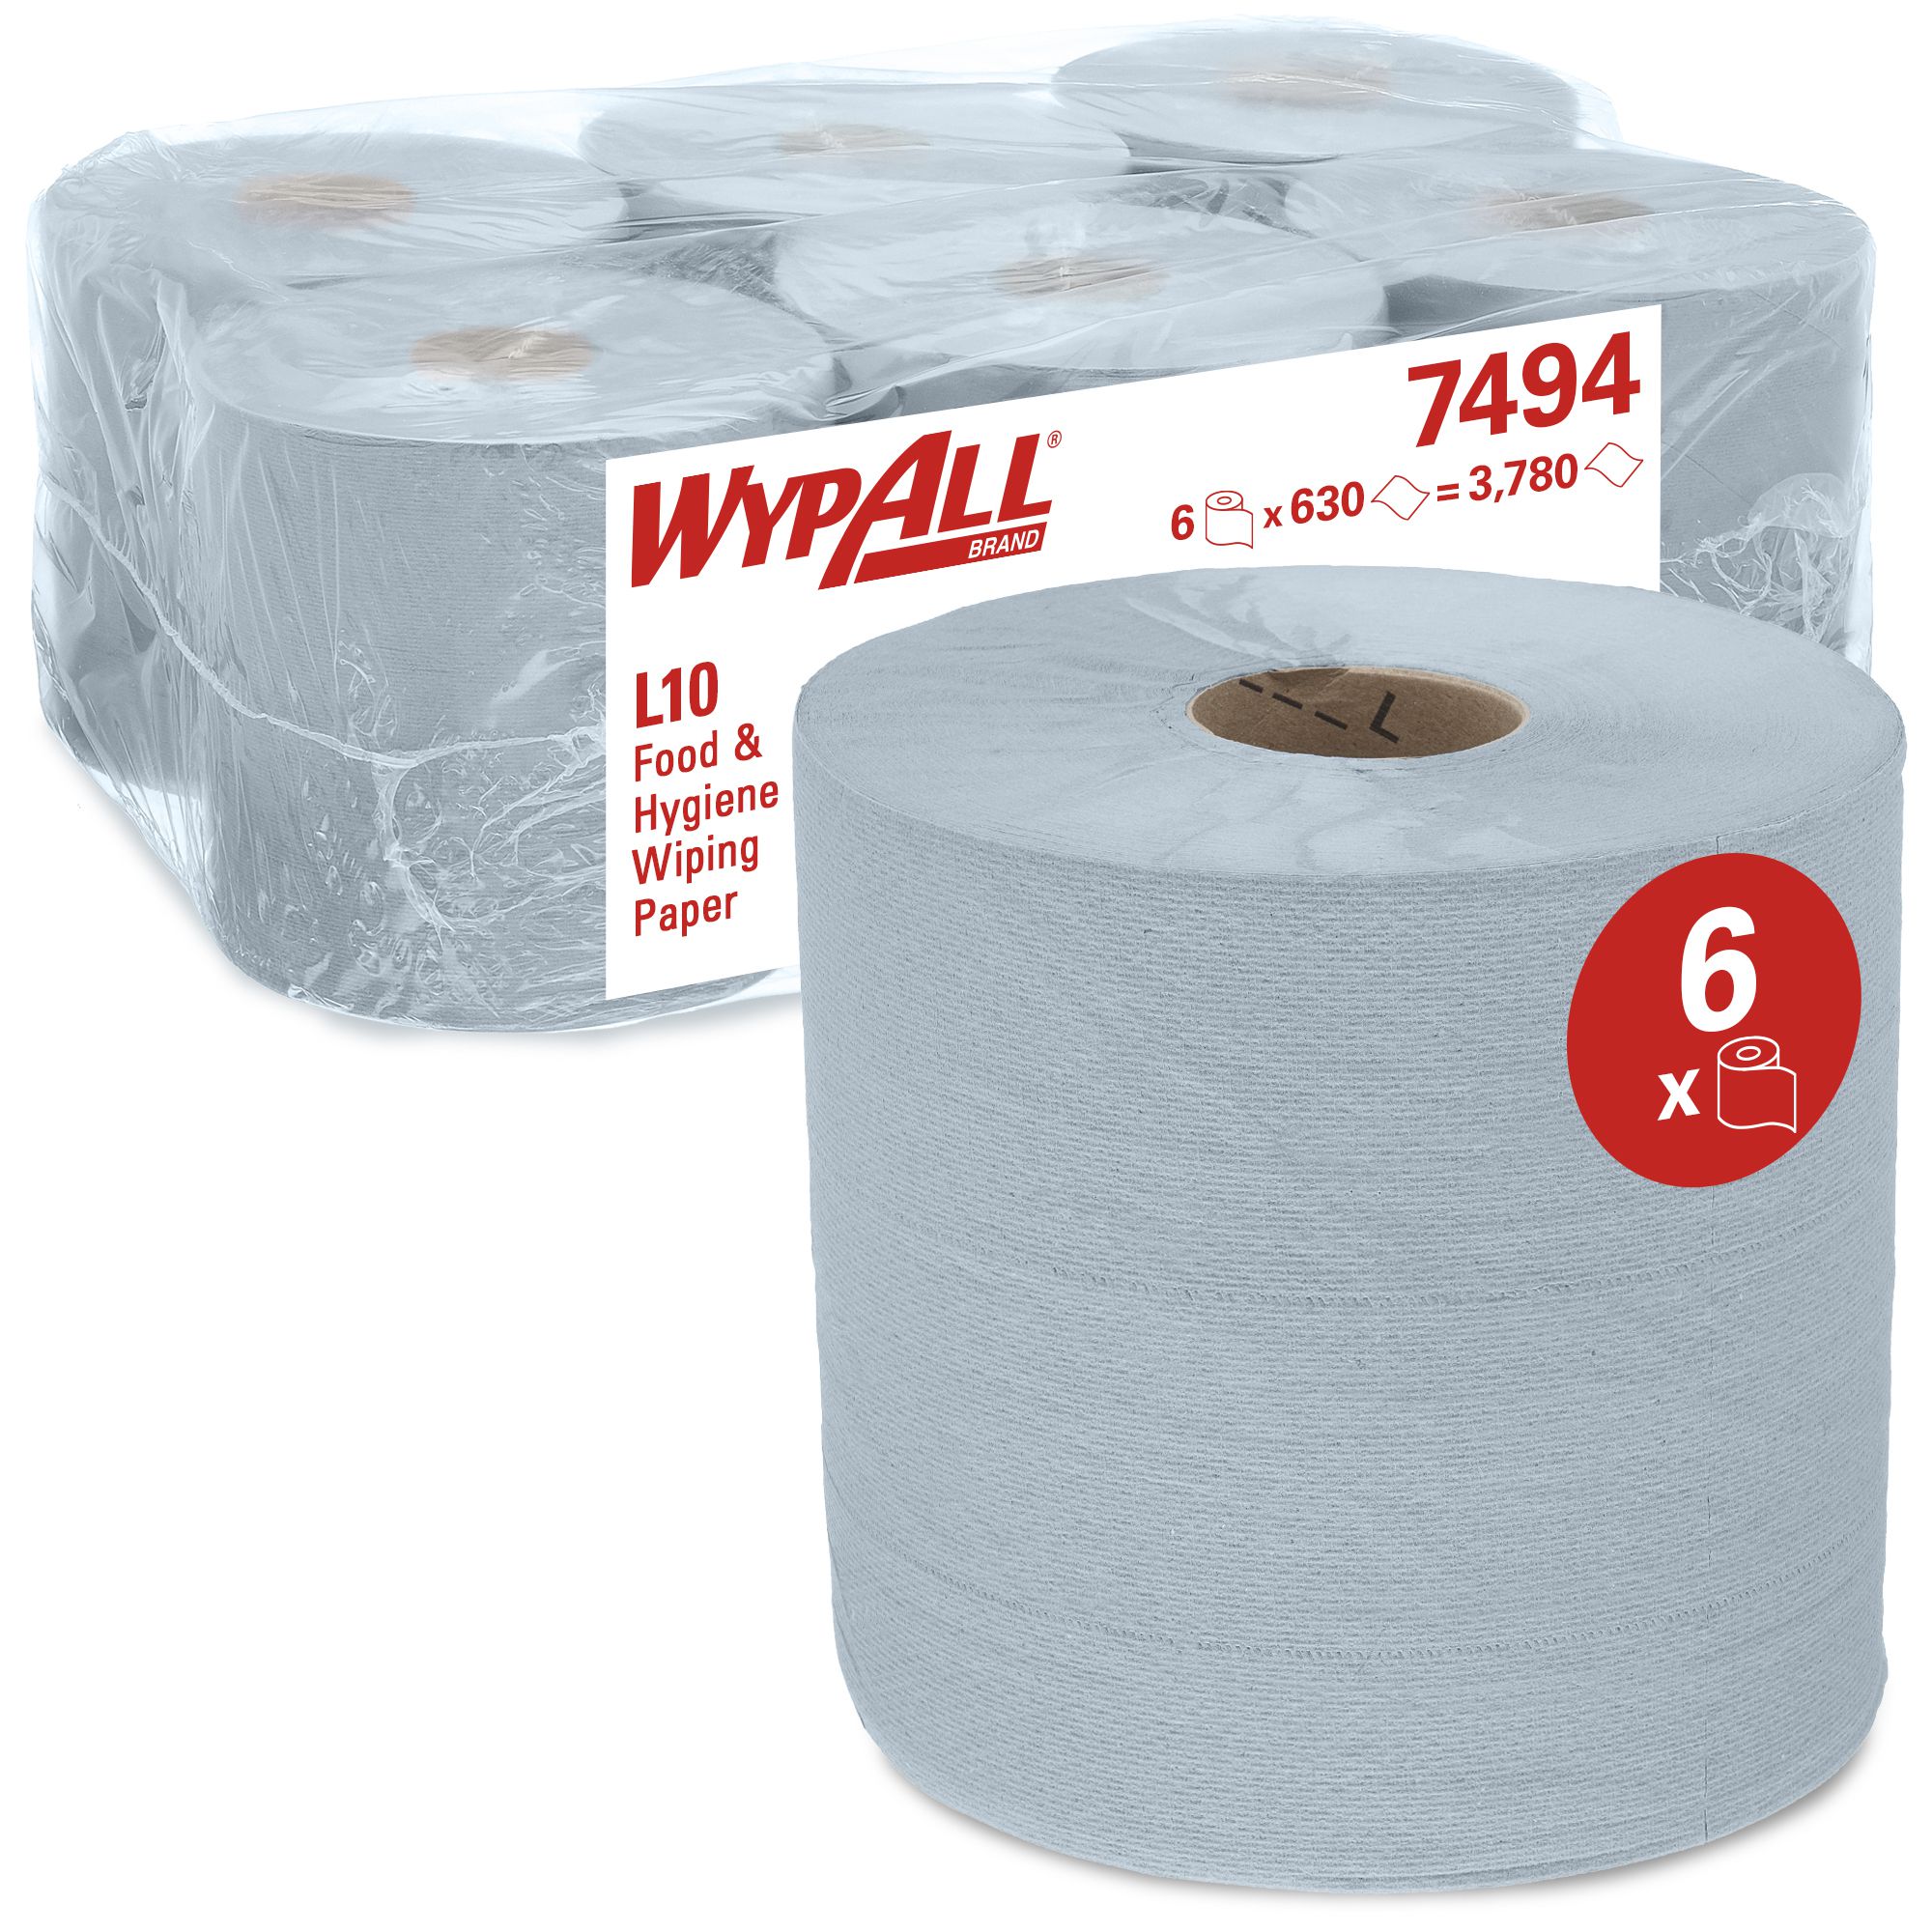 7494 Протирочный материал WypAll L10 Extra для легких задач - 6 рулонов по 630 листов